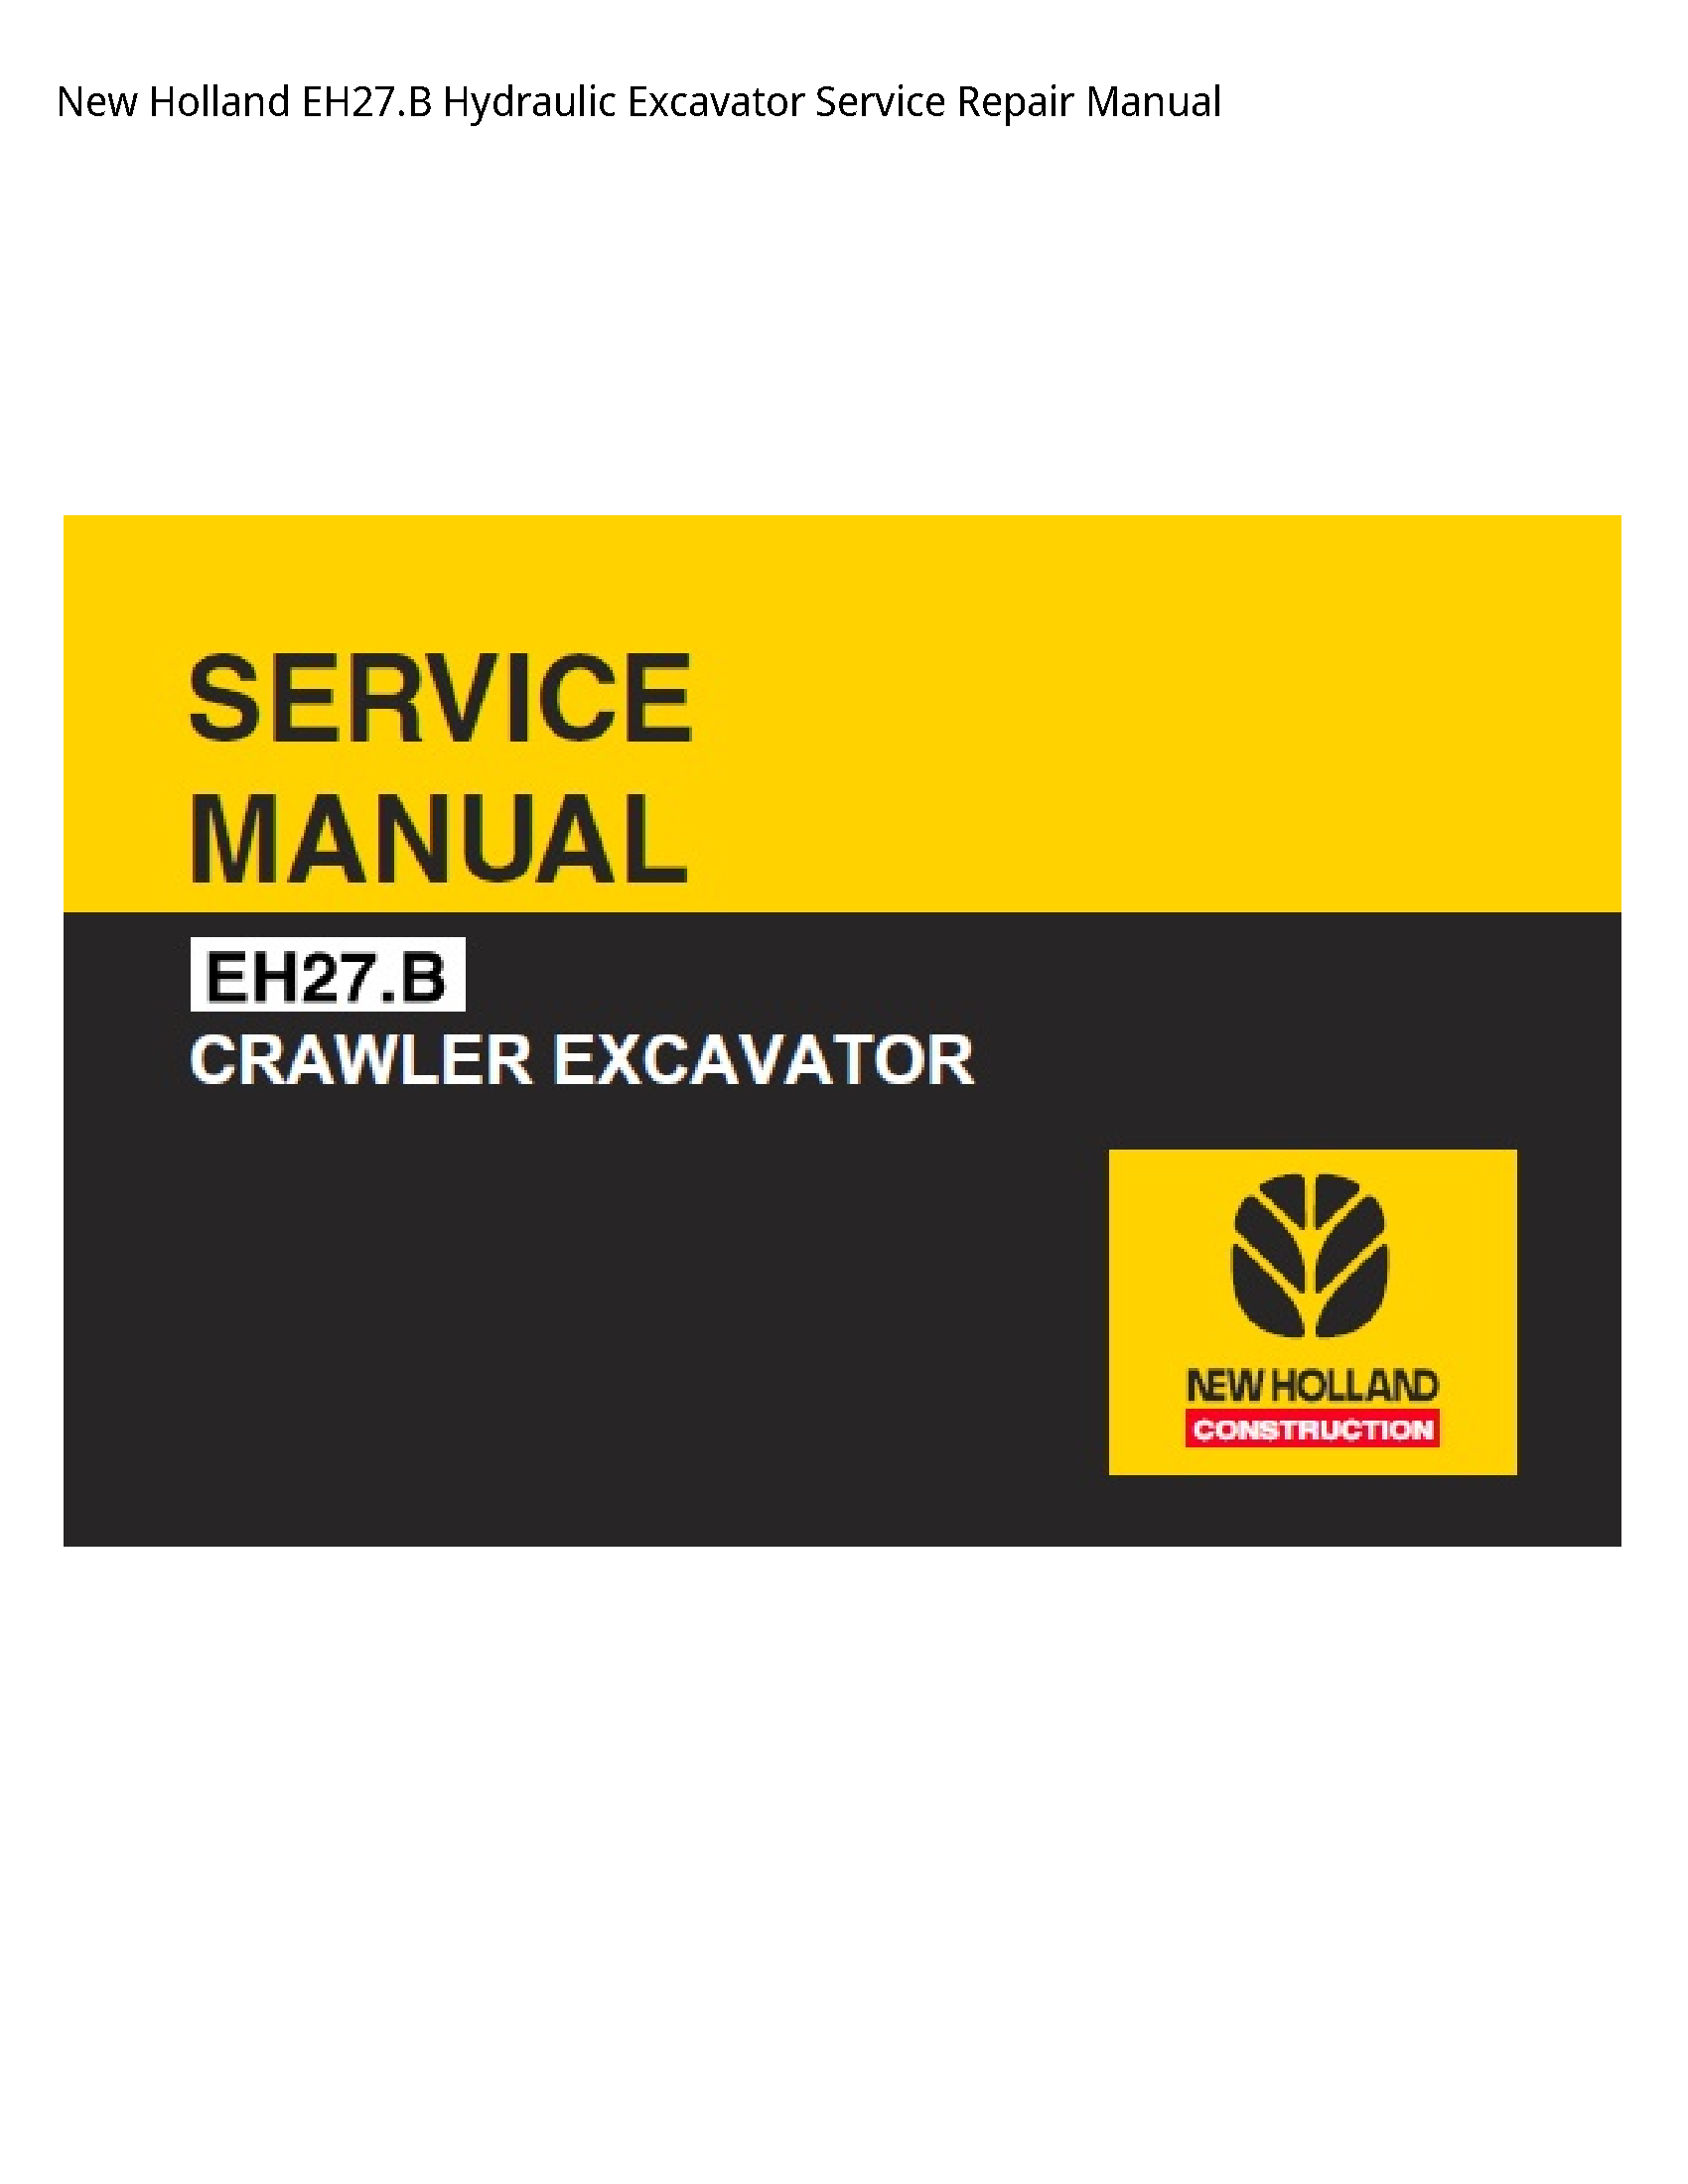 New Holland EH27.B Hydraulic Excavator manual